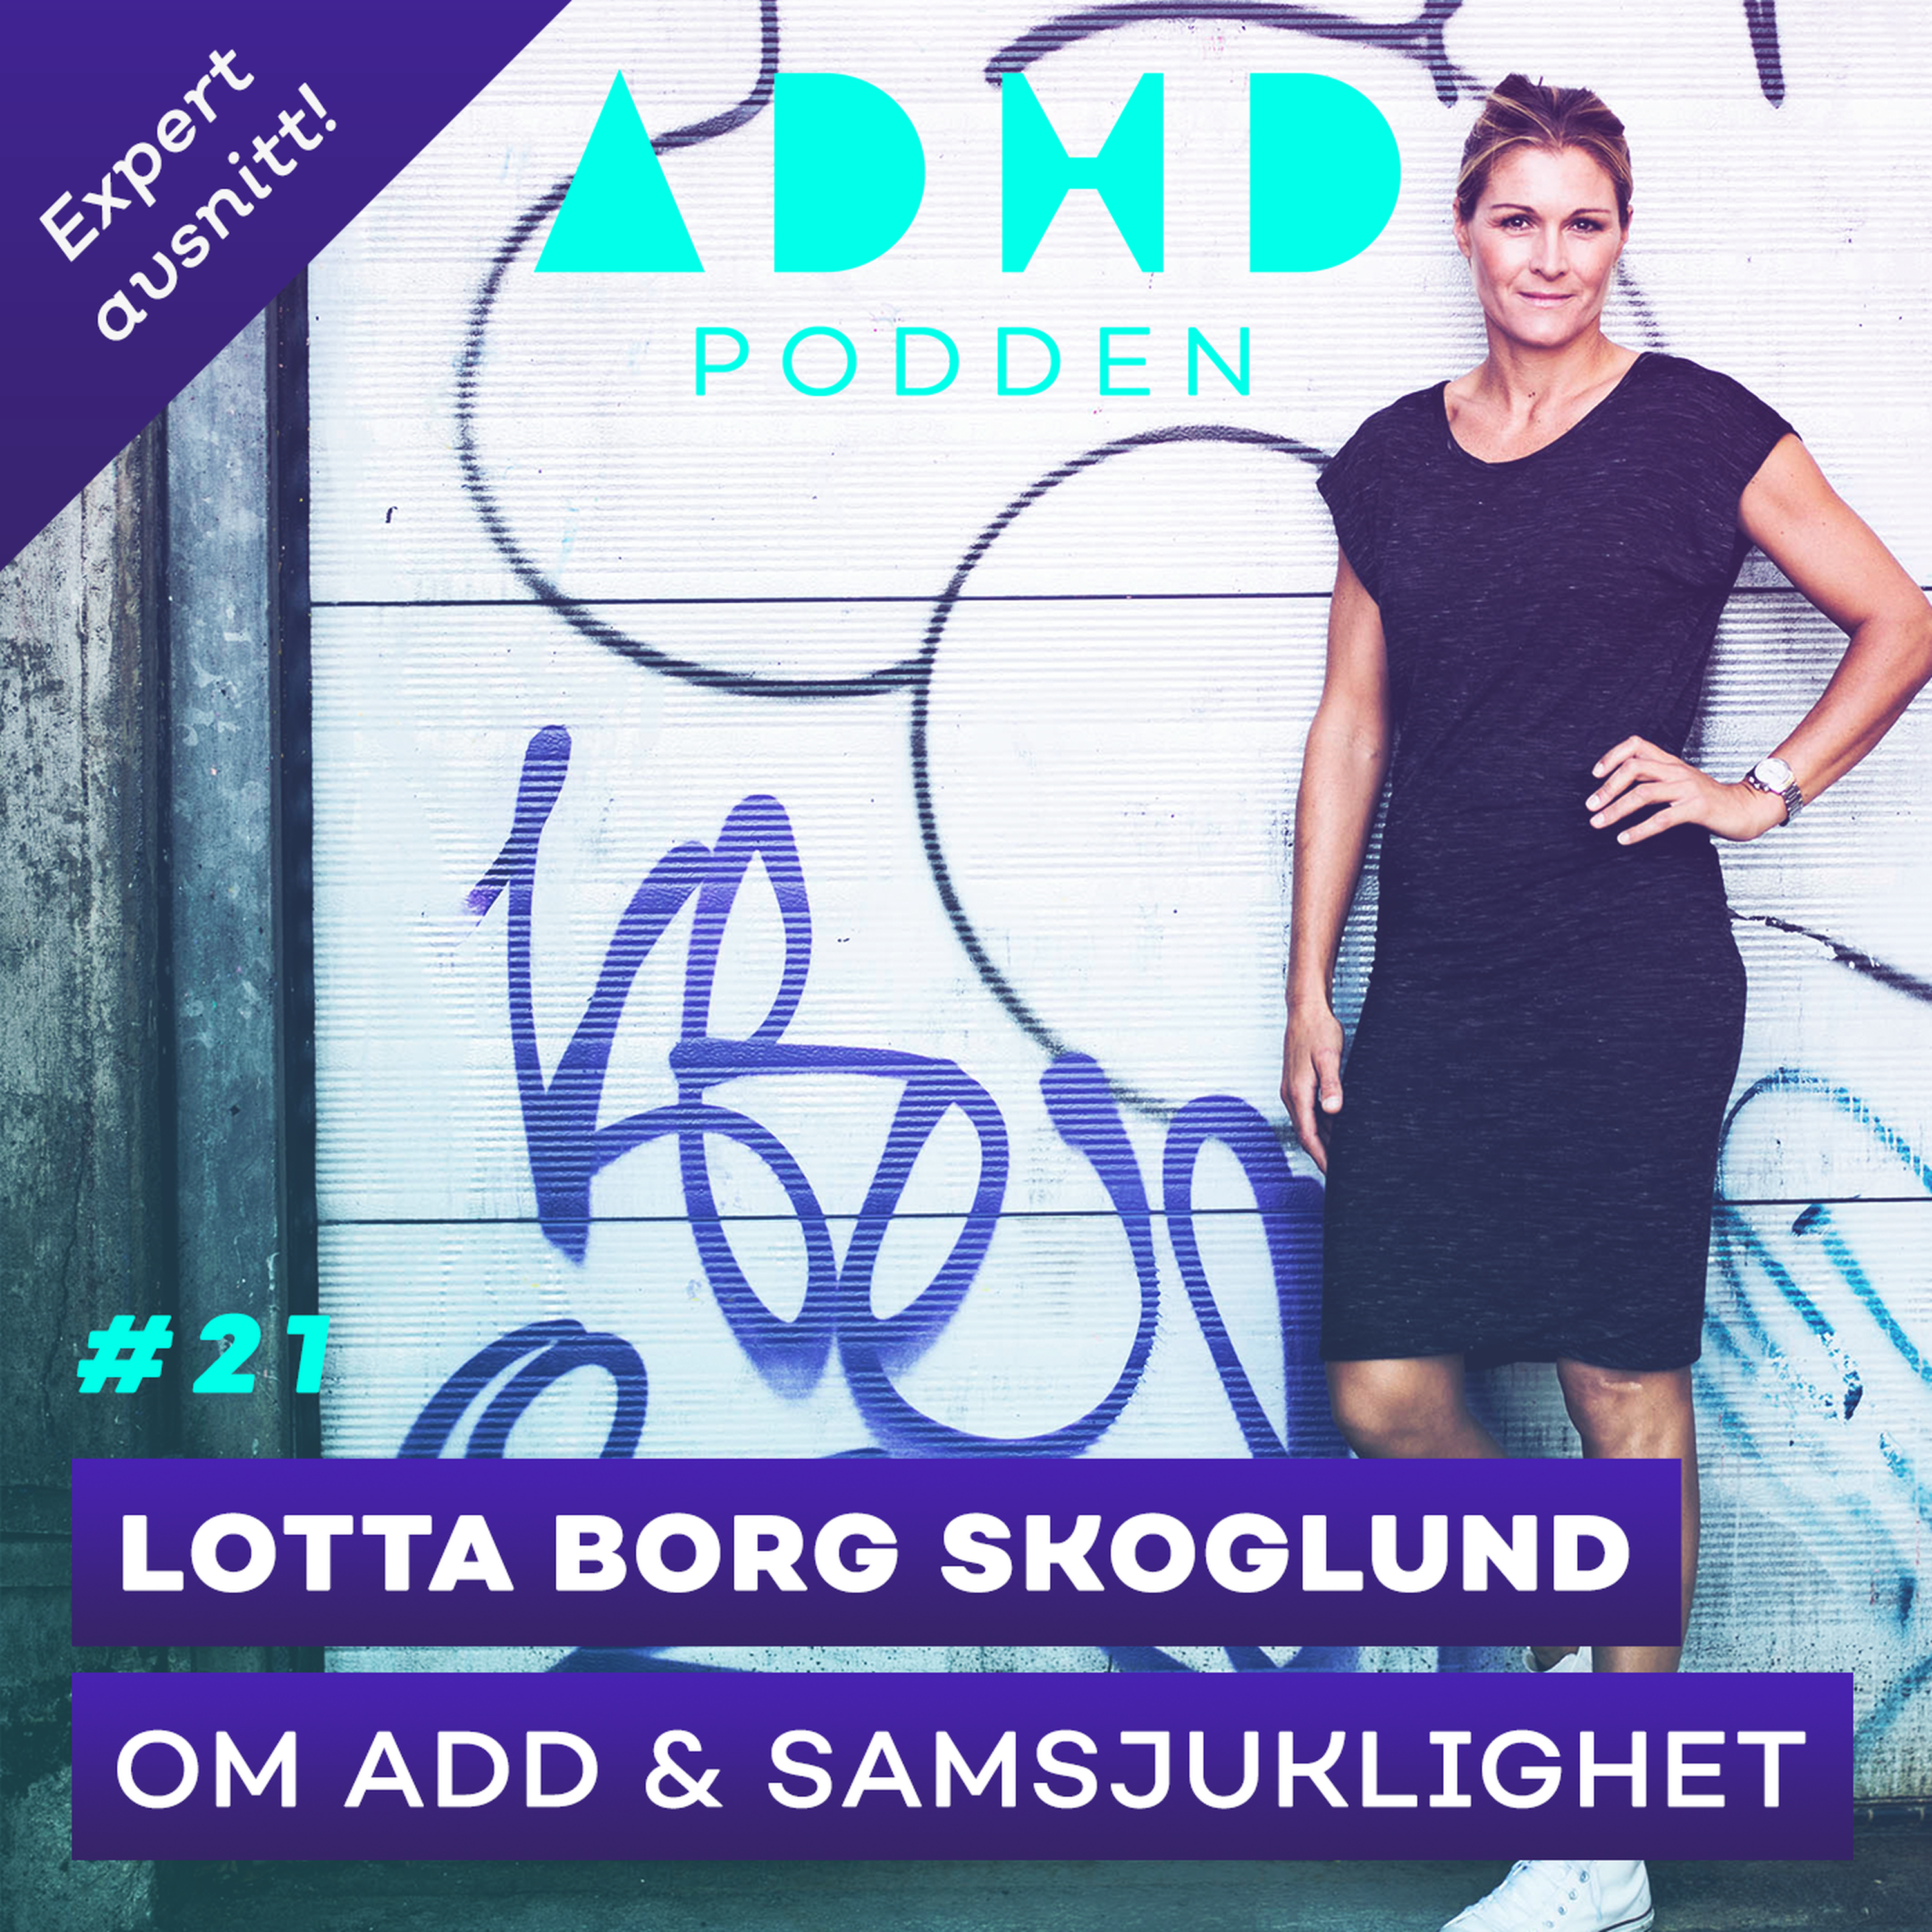 #21. EXPERTAVSNITT! OM ADD & SAMSJUKLIGHET med Lotta Borg Skoglund, Överläkare - Del 1